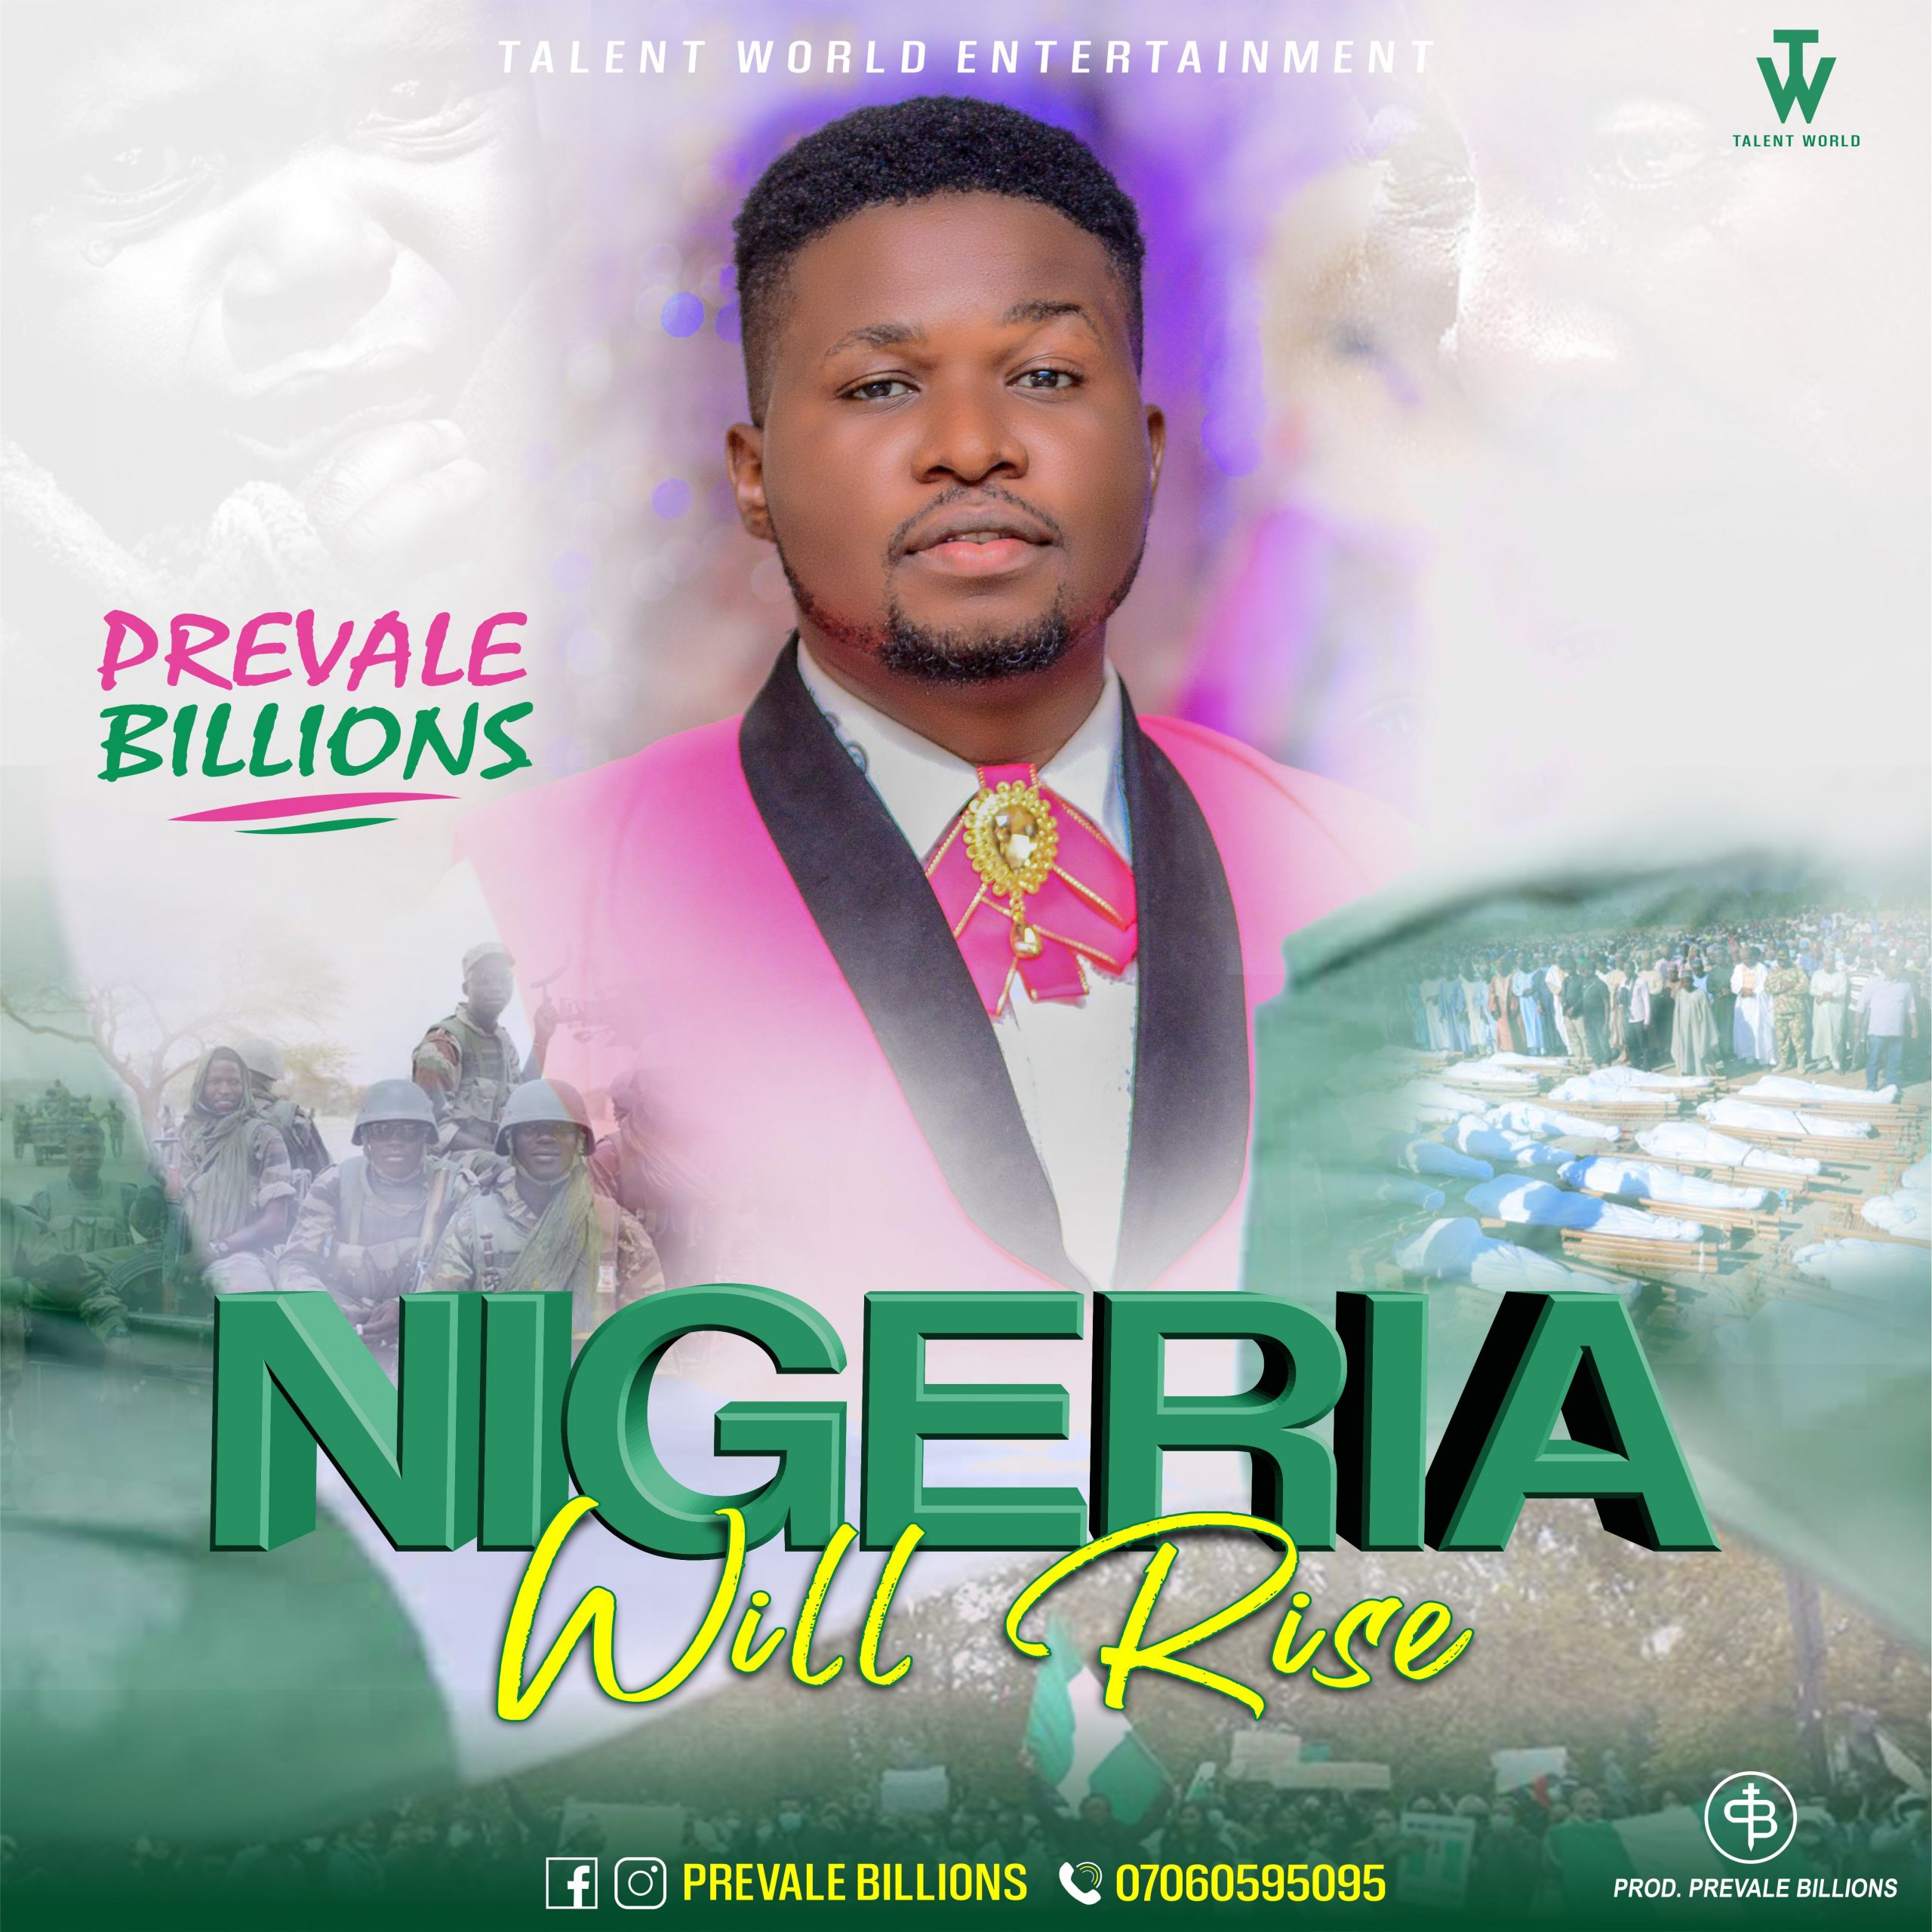 DOWNLOAD MP3: Prevale Billions - Nigeria will rise